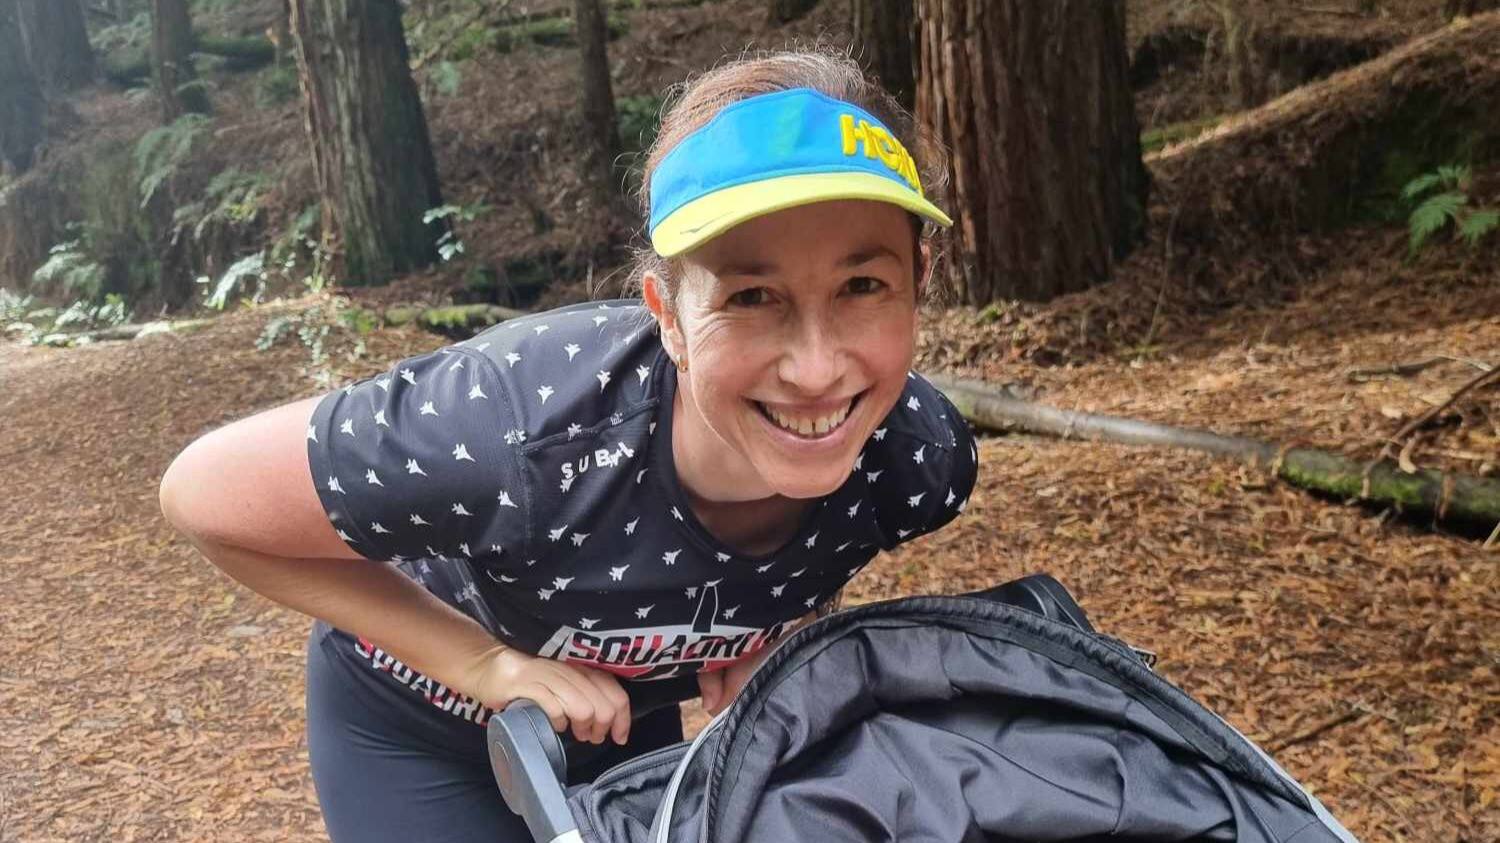 Ali Pottinger - The future of trail running for women in Australasia